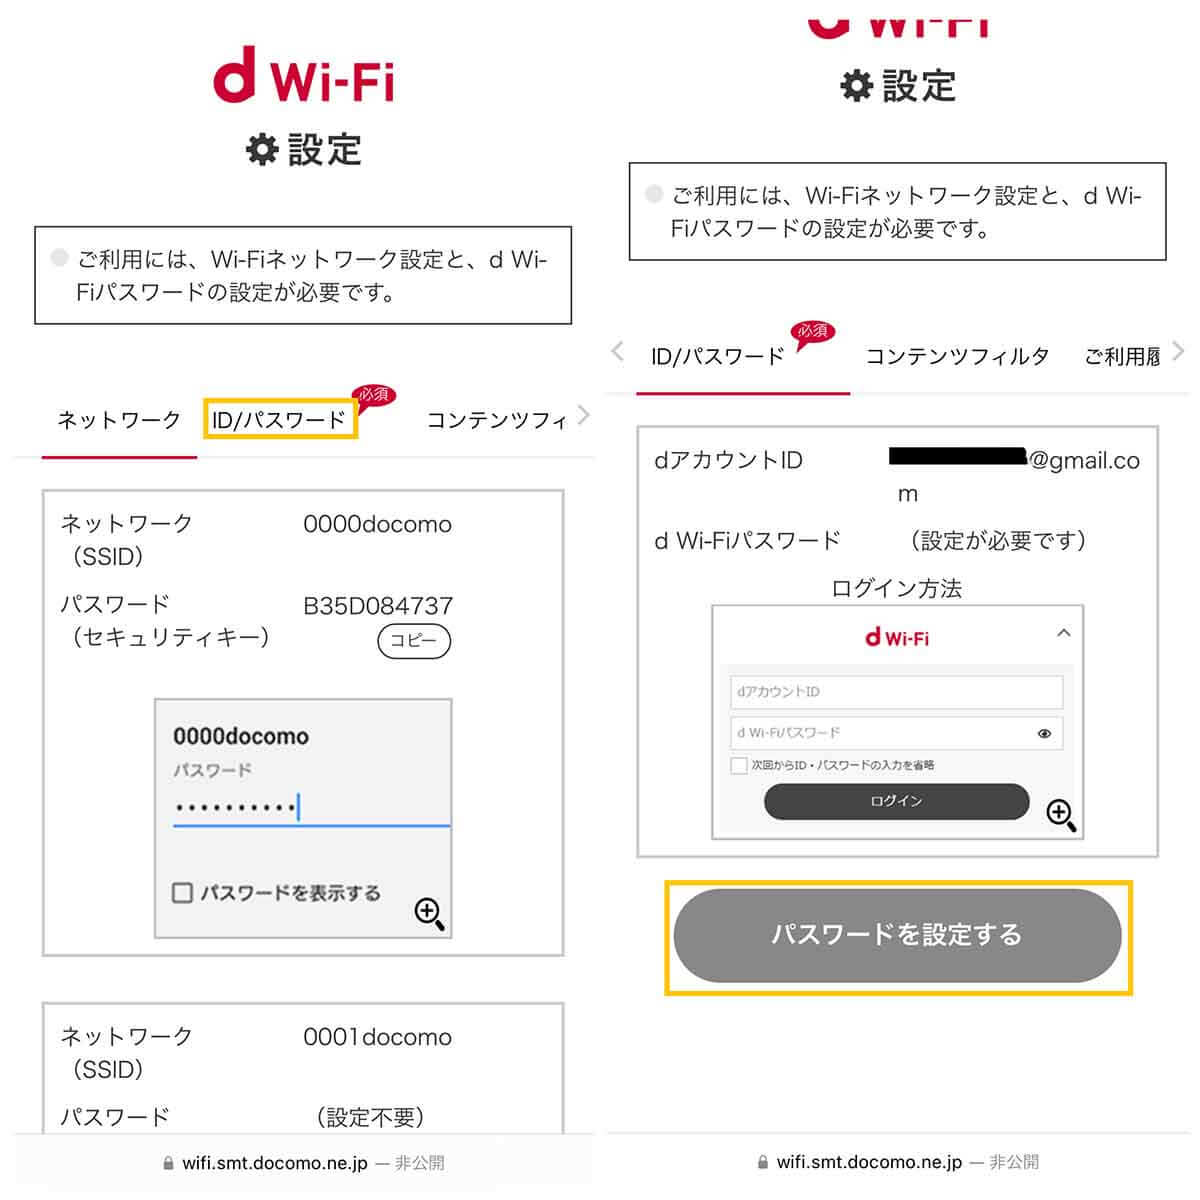 ドコモの無料Wi-Fi「d Wi-Fi」も利用可能：ドコモユーザー以外も無料4